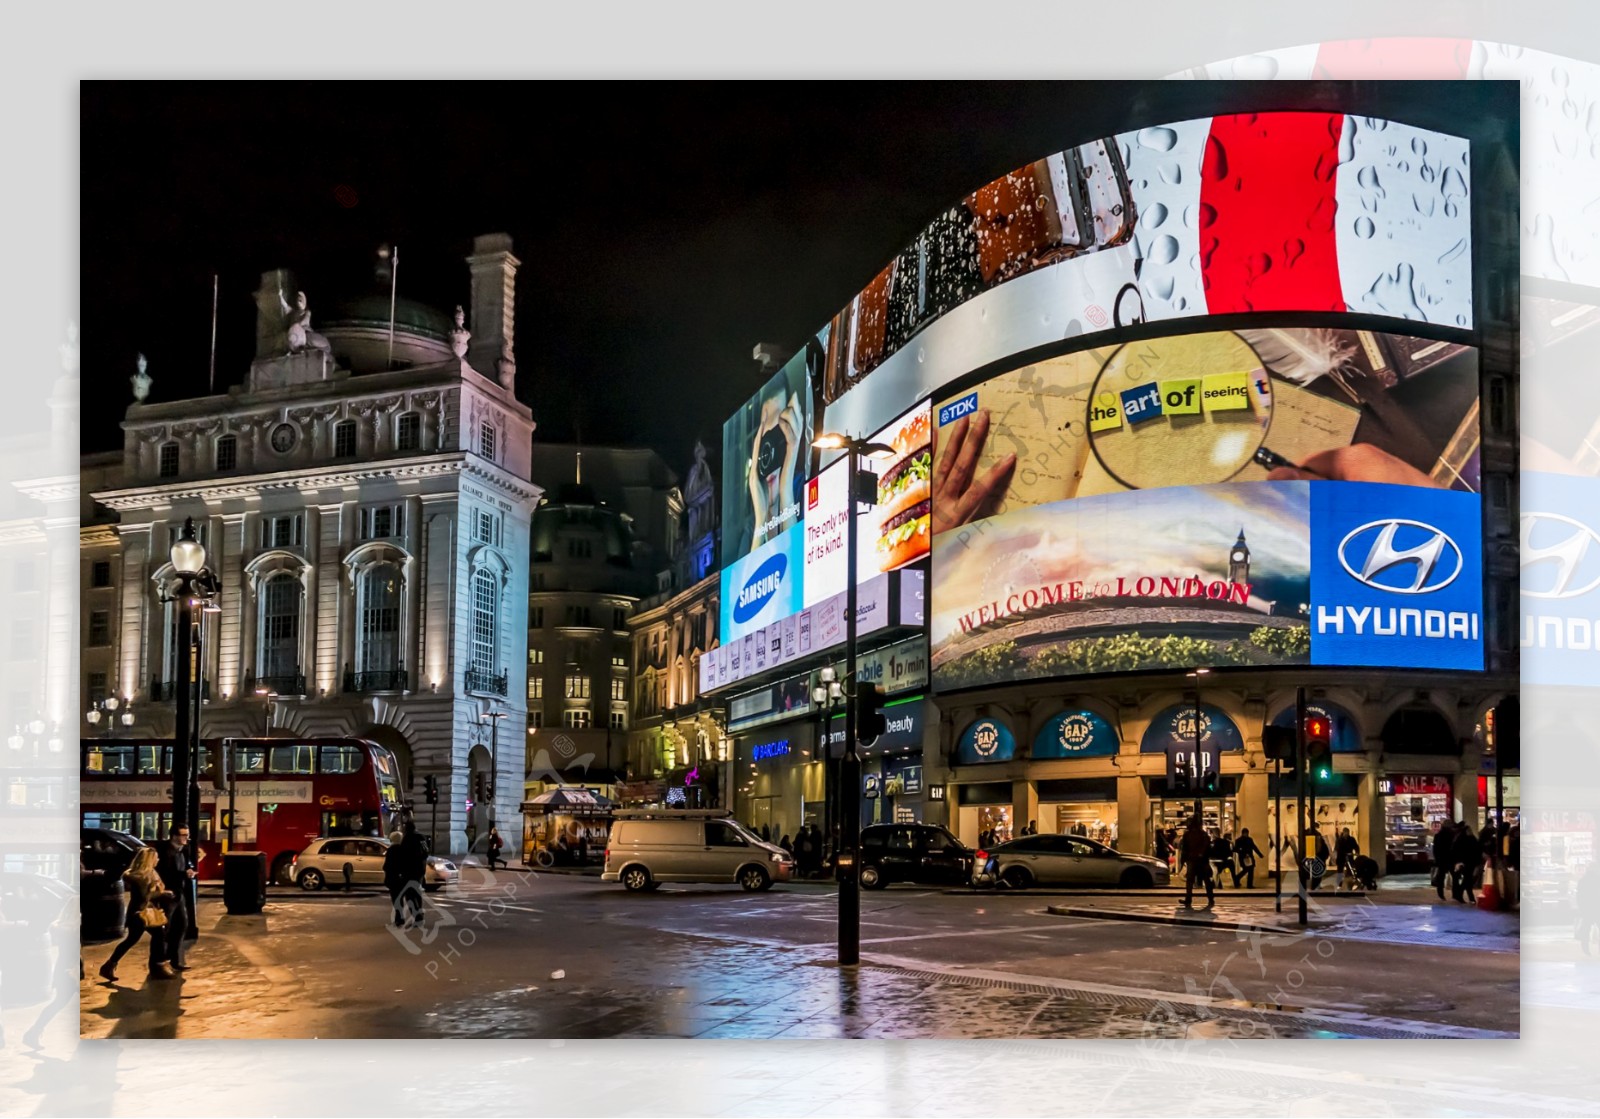 夜晚的伦敦街头图片